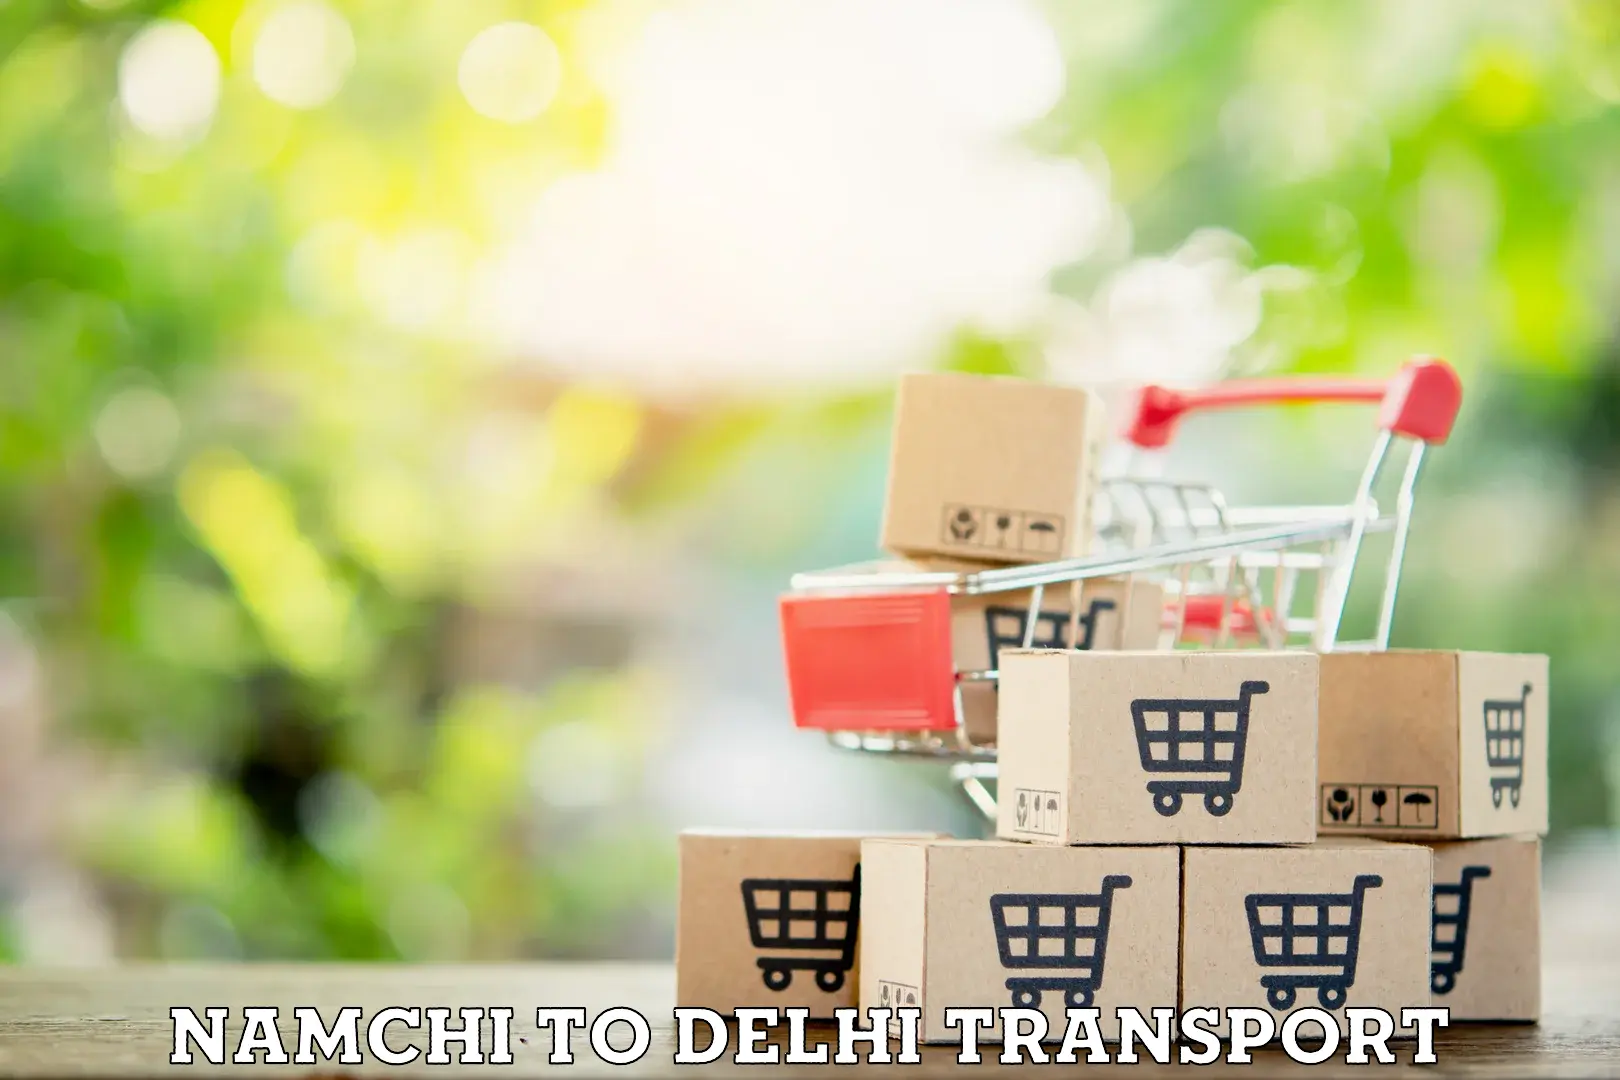 Pick up transport service Namchi to Ashok Vihar